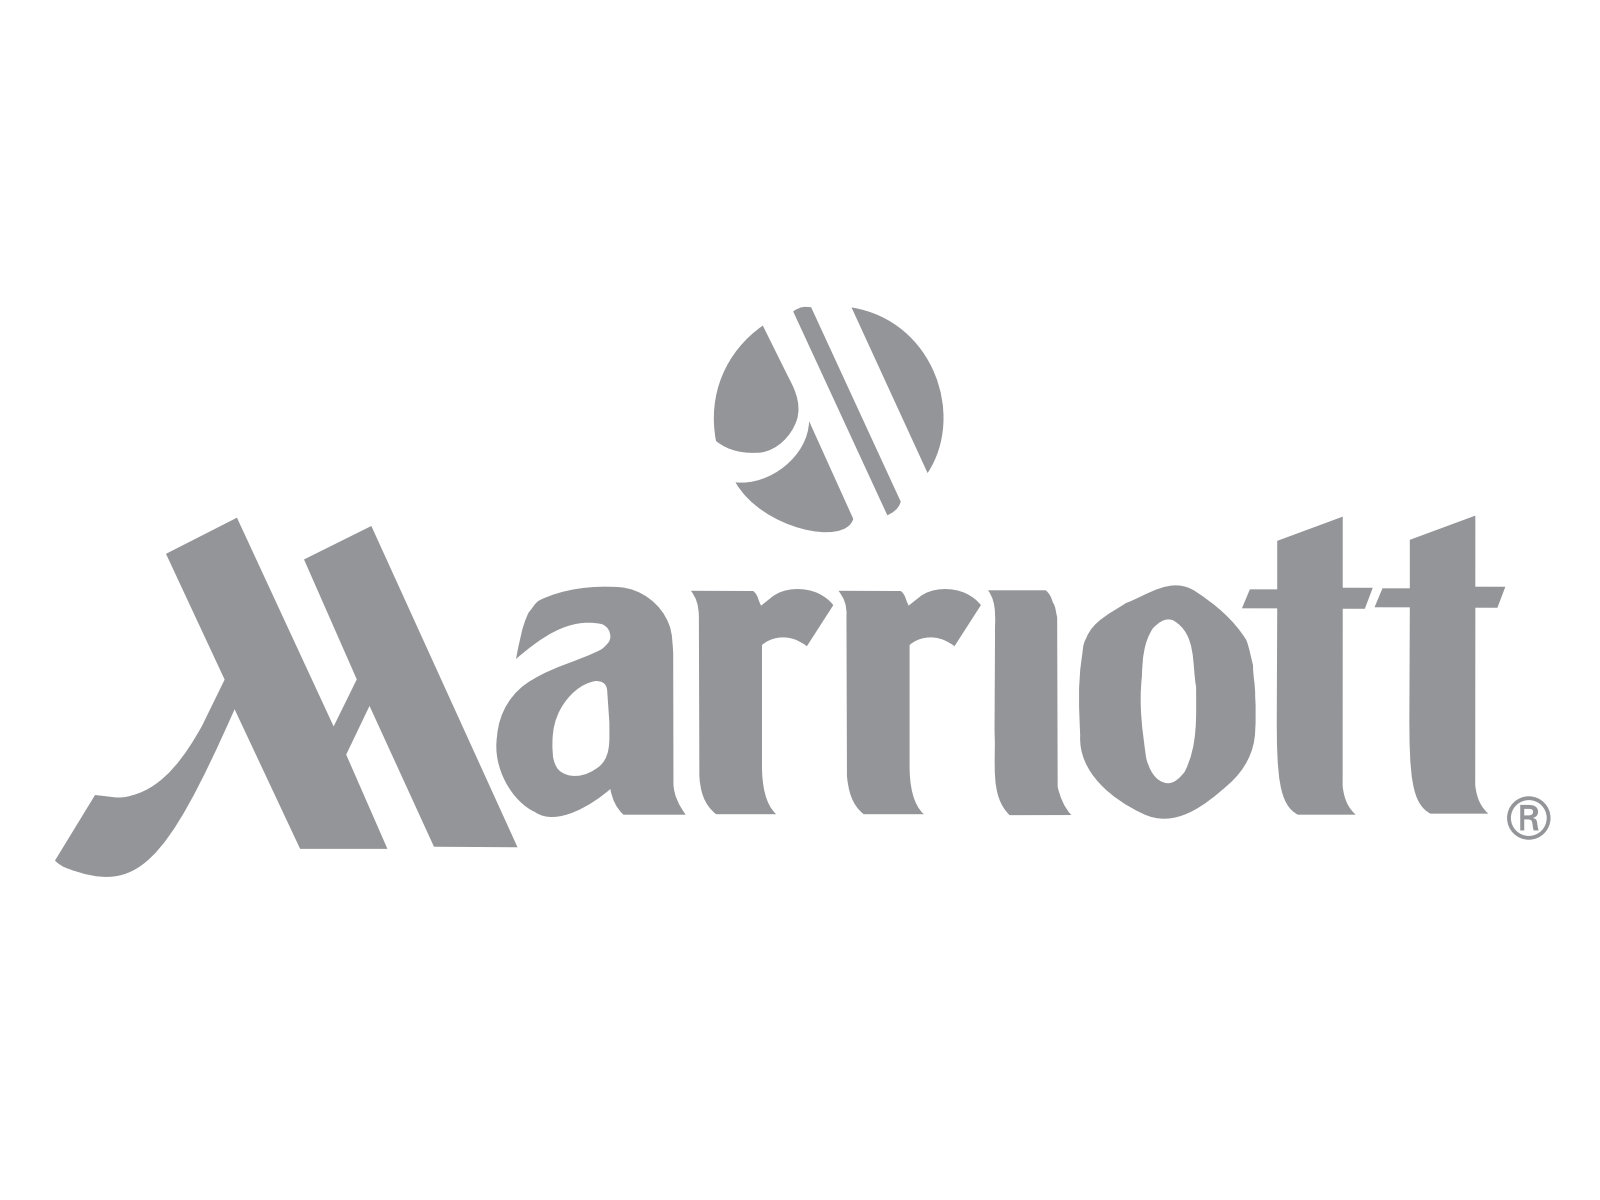 15_Marriott-logo-logotype.png